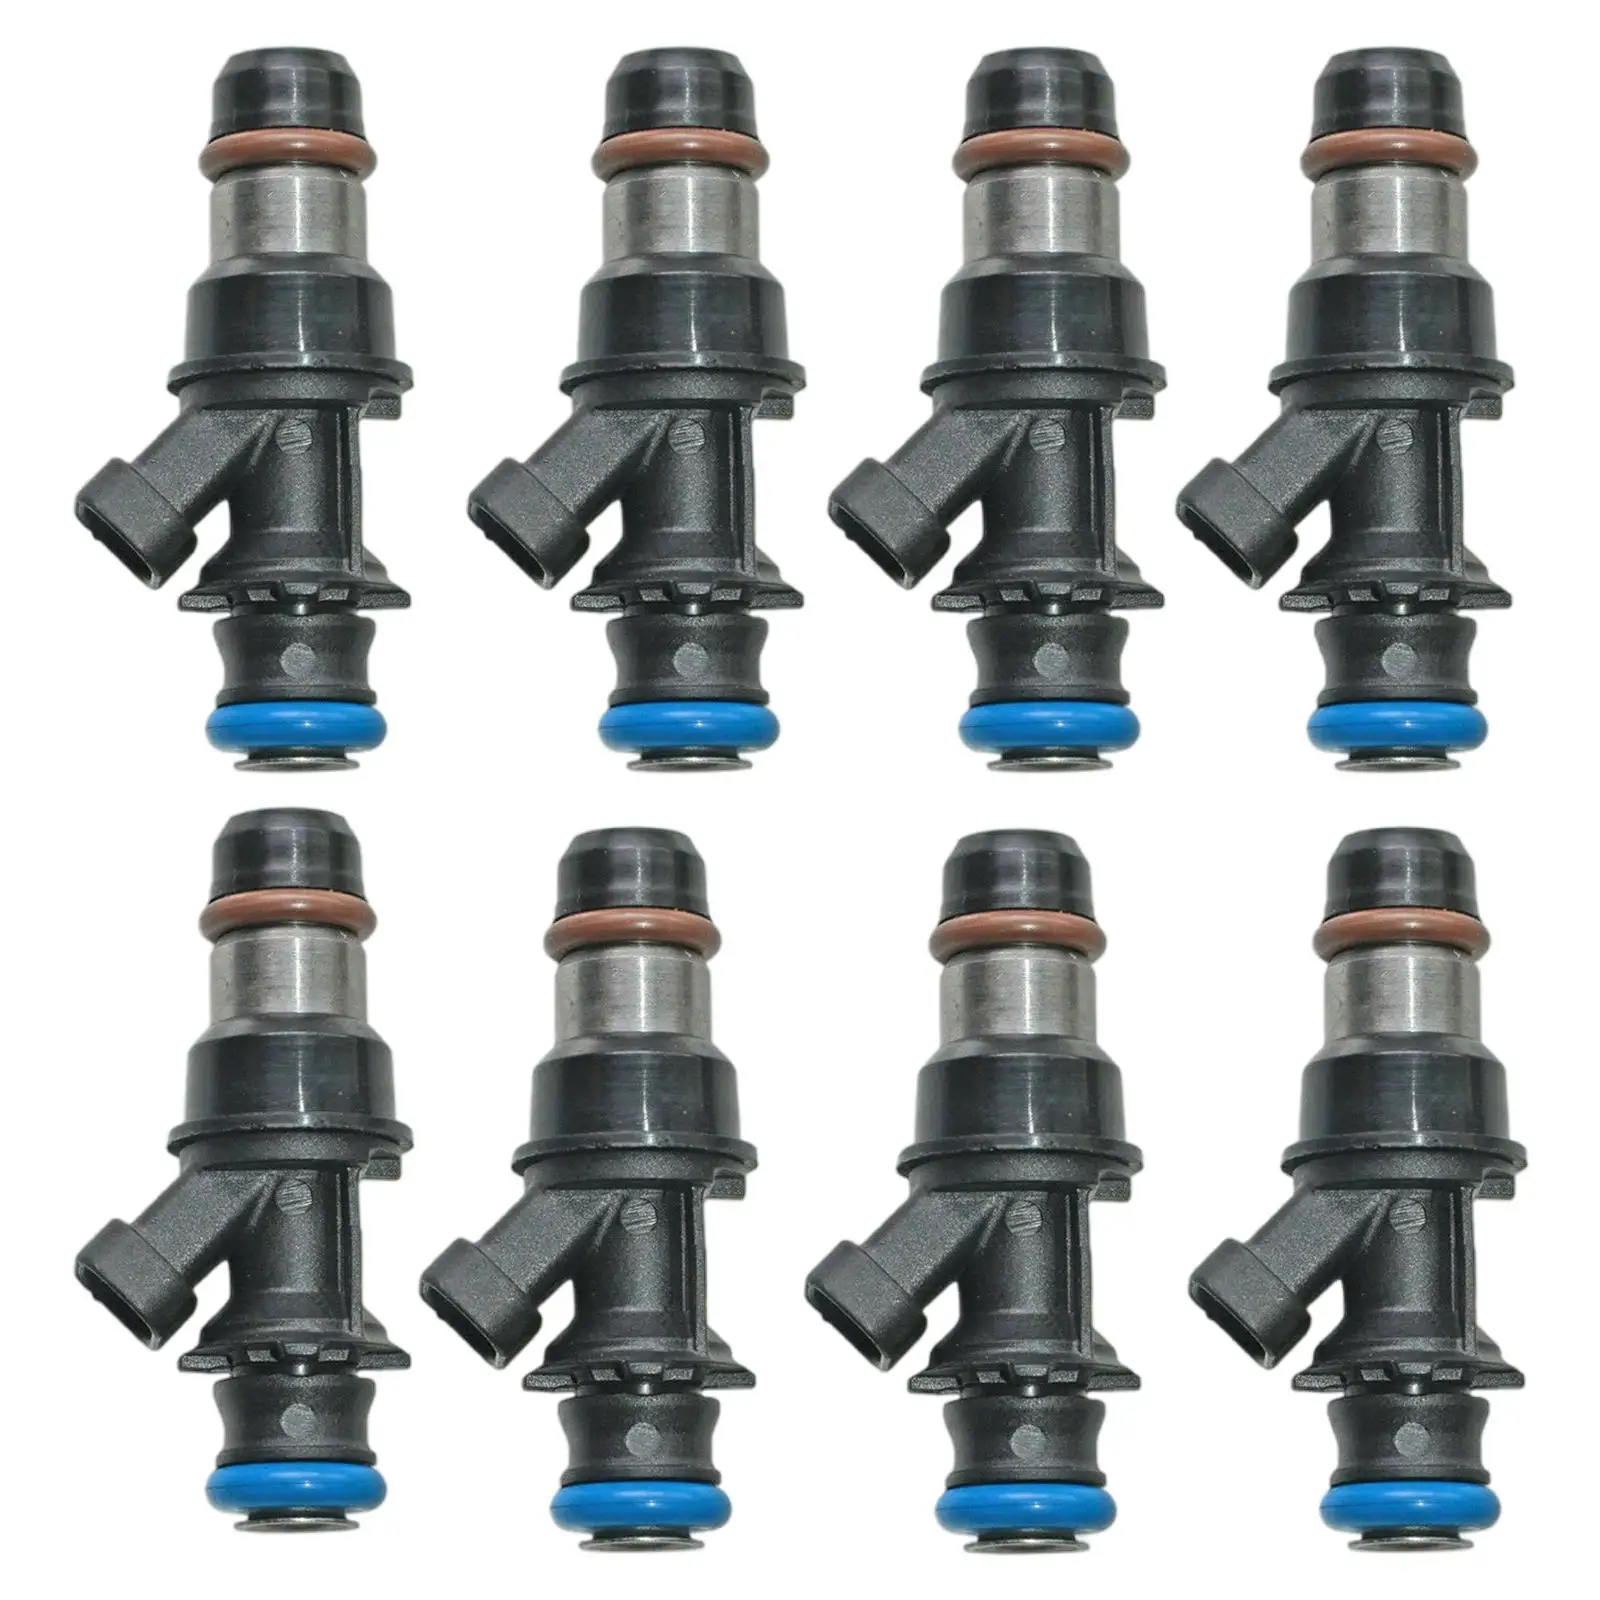 8x Fuel Injectors Car Supplies Black Auto Parts Replacement for GMC 2500HD V8-6.0L 01-07 17113553 4G1659 FJ10062 25320288